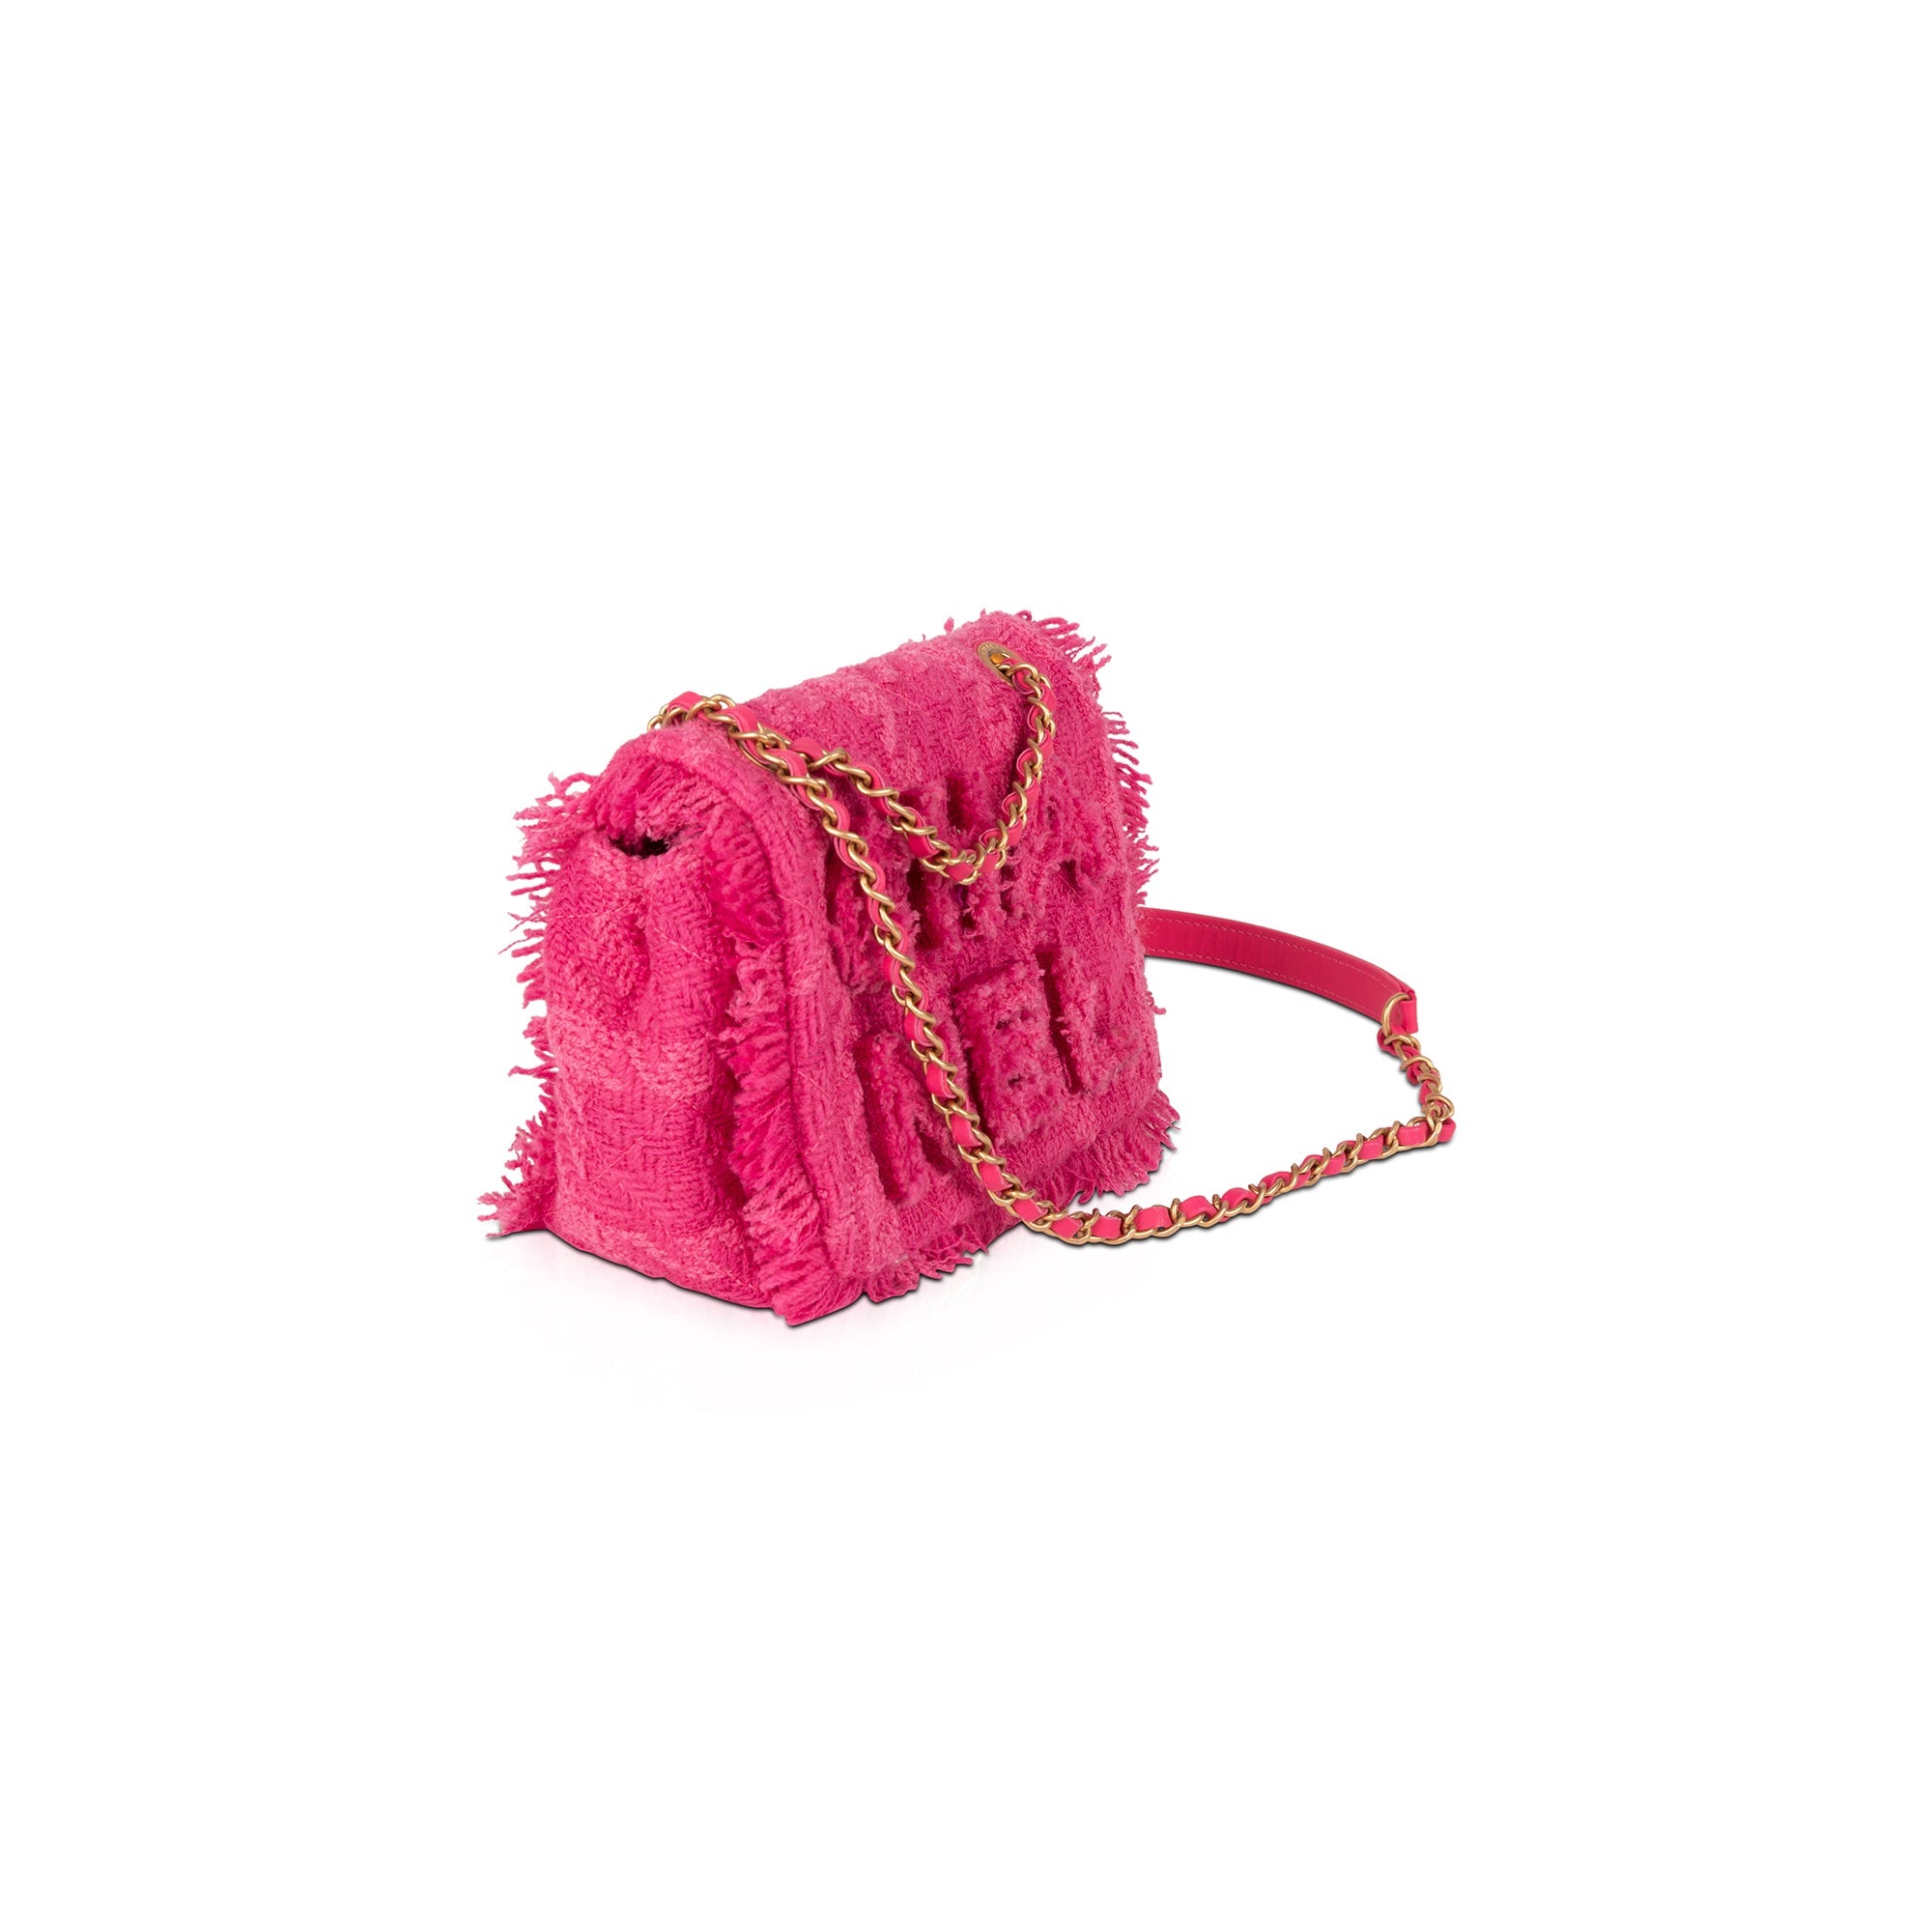 Chanel 19 Flap Shearling Sheepskin Shoulder Bag Pink